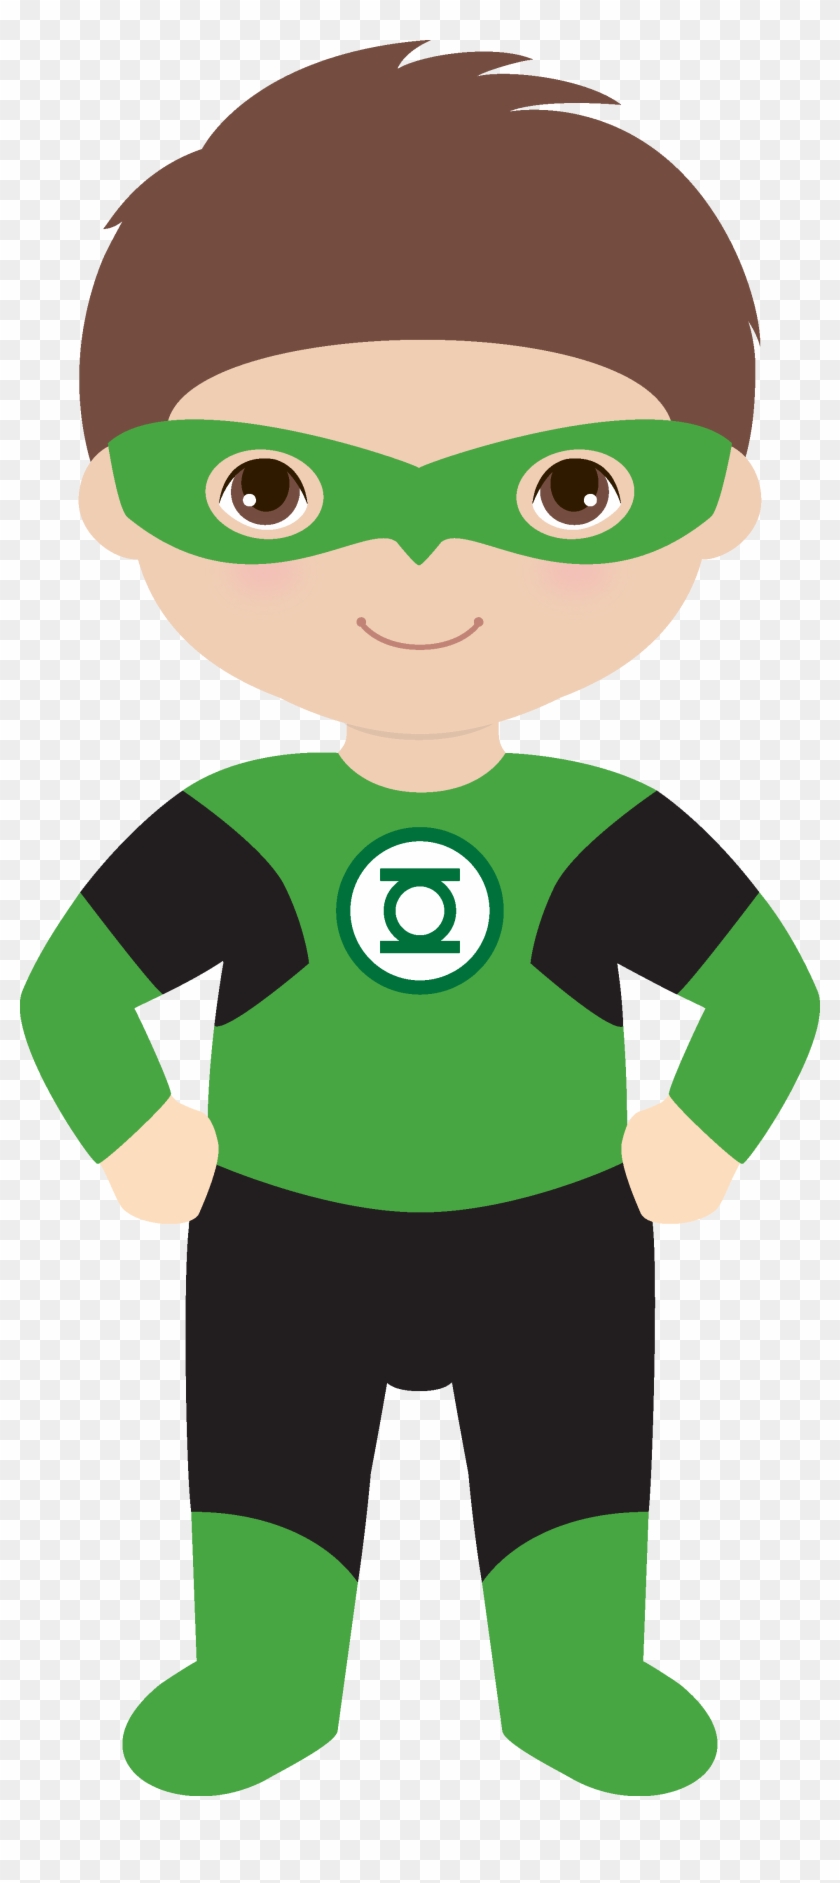 Hero Central Vbs, Superhero Party, Clip Art, Superhero, - Green Lantern Superhero Clipart #353760